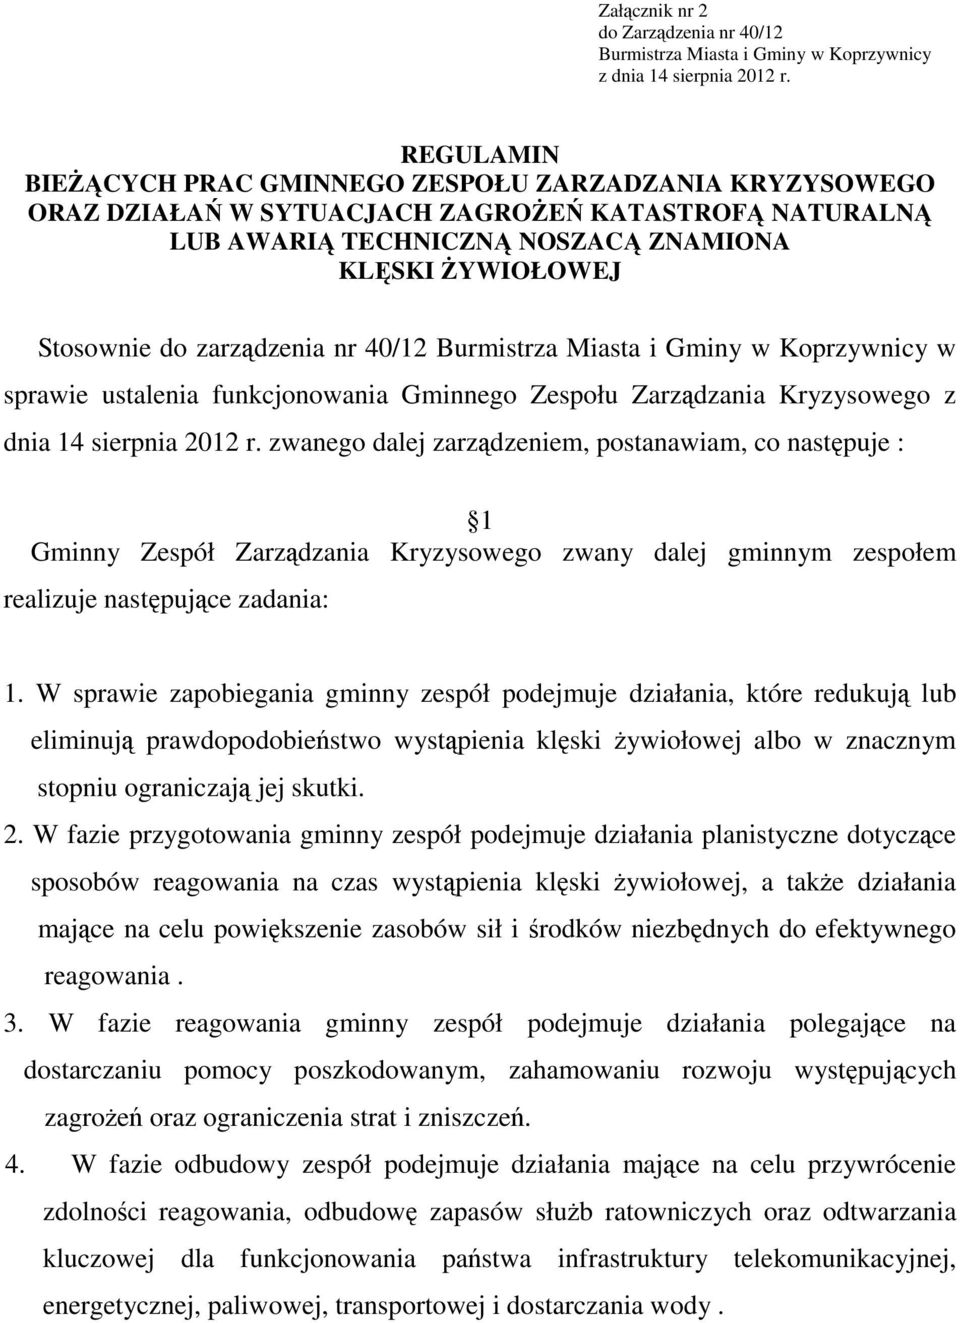 zarządzenia nr 40/12 Burmistrza Miasta i Gminy w Koprzywnicy w sprawie ustalenia funkcjonowania Gminnego Zespołu Zarządzania Kryzysowego z dnia 14 sierpnia 2012 r.